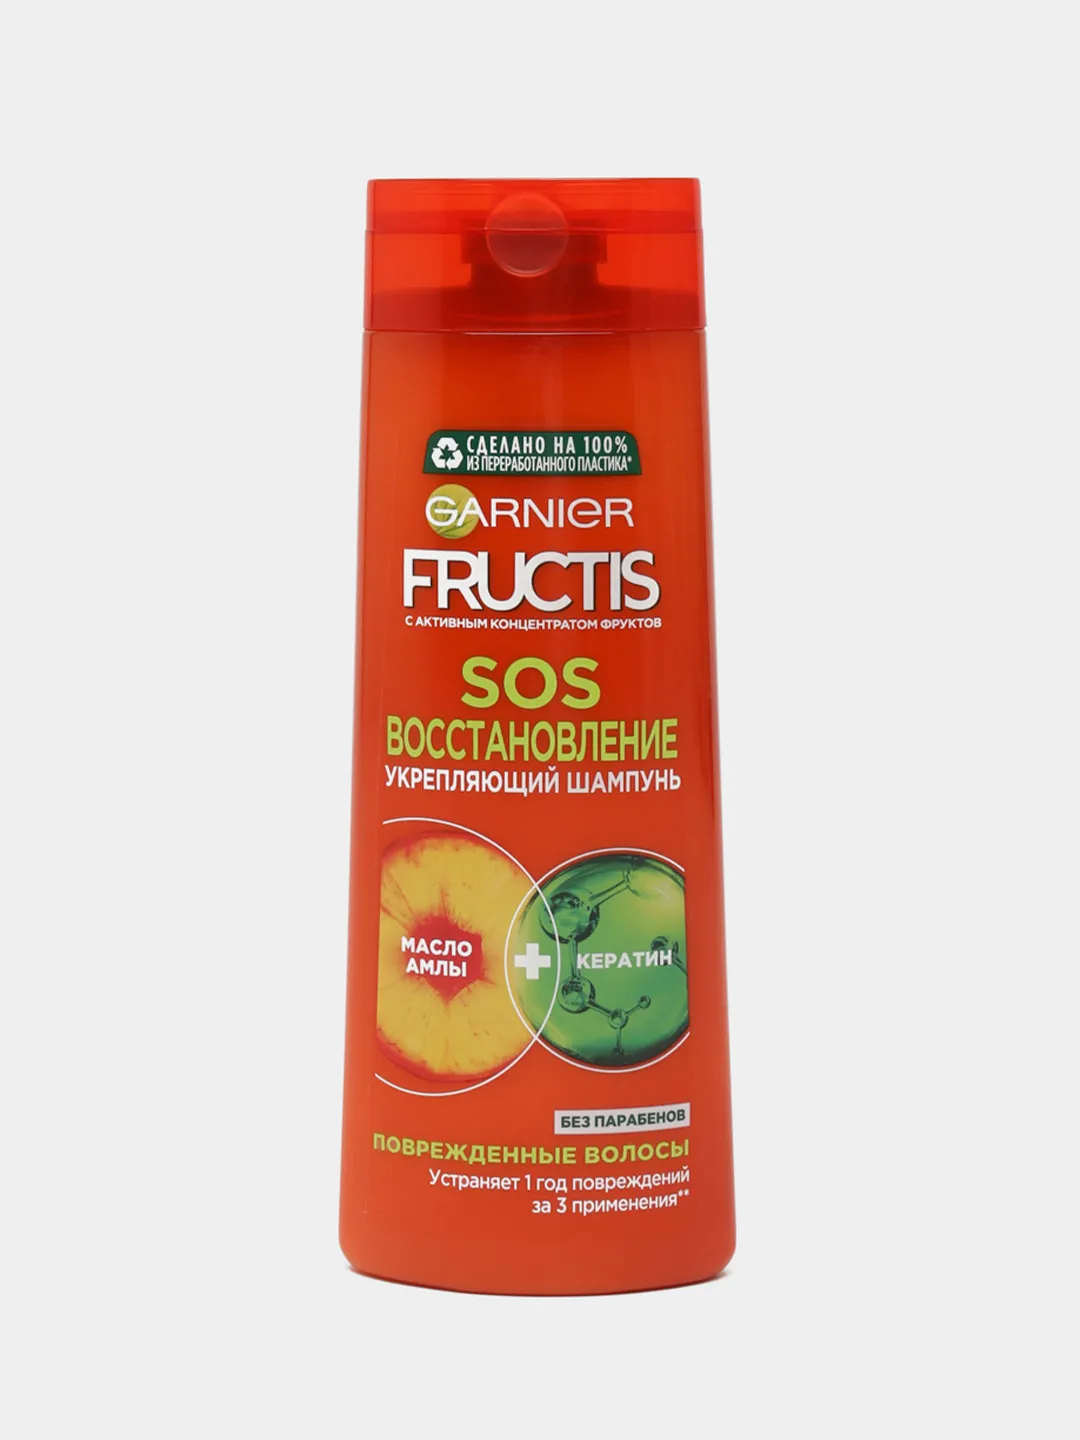 Шампунь для волос Fructis SOS - Восстановление, 400мл#1